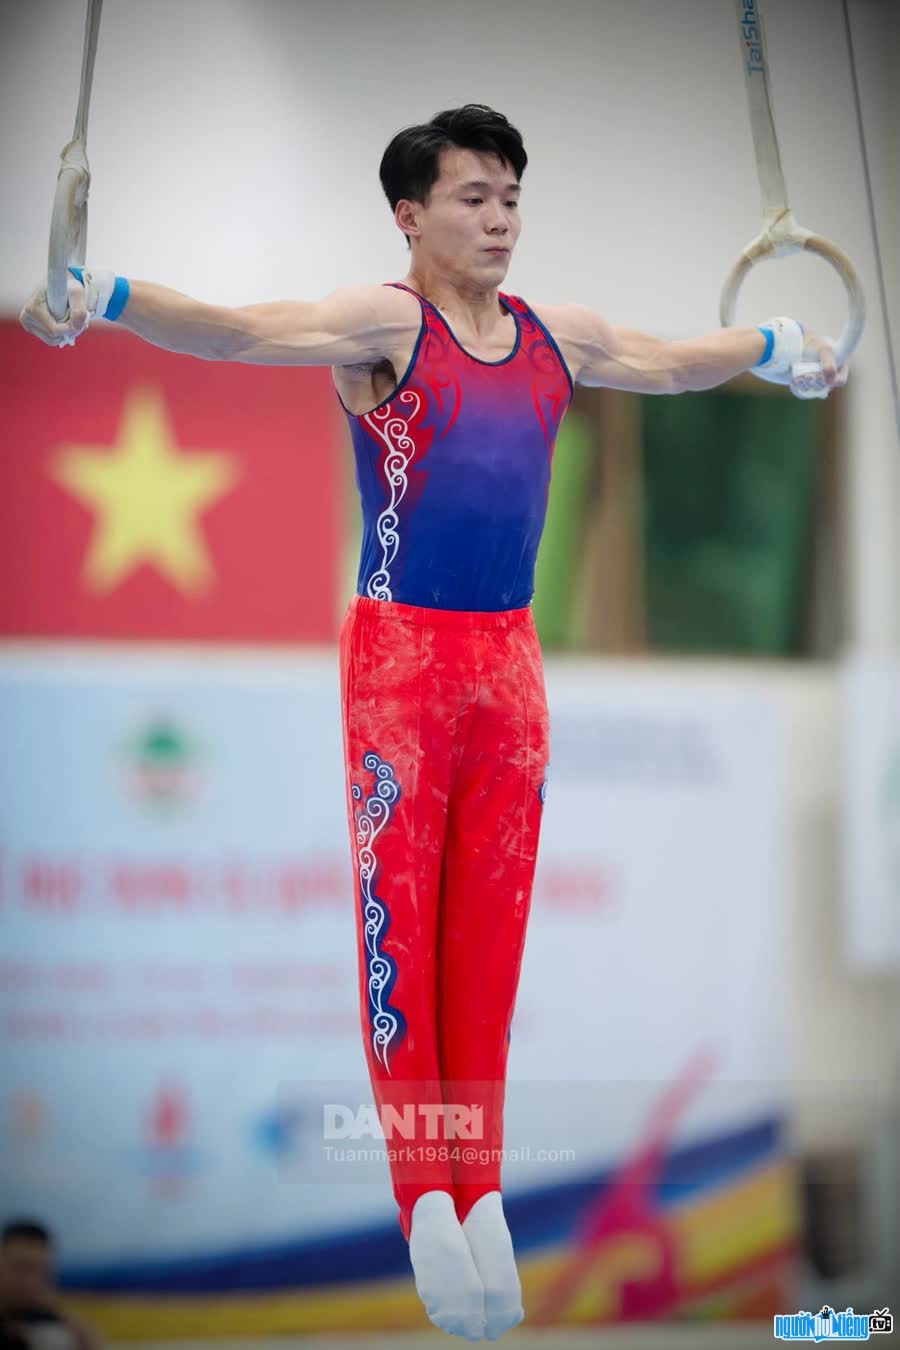 Văn Vĩ Lương là vận động viên thể dục dụng dụng cụ thuộc đội tuyển Quốc gia Việt Nam